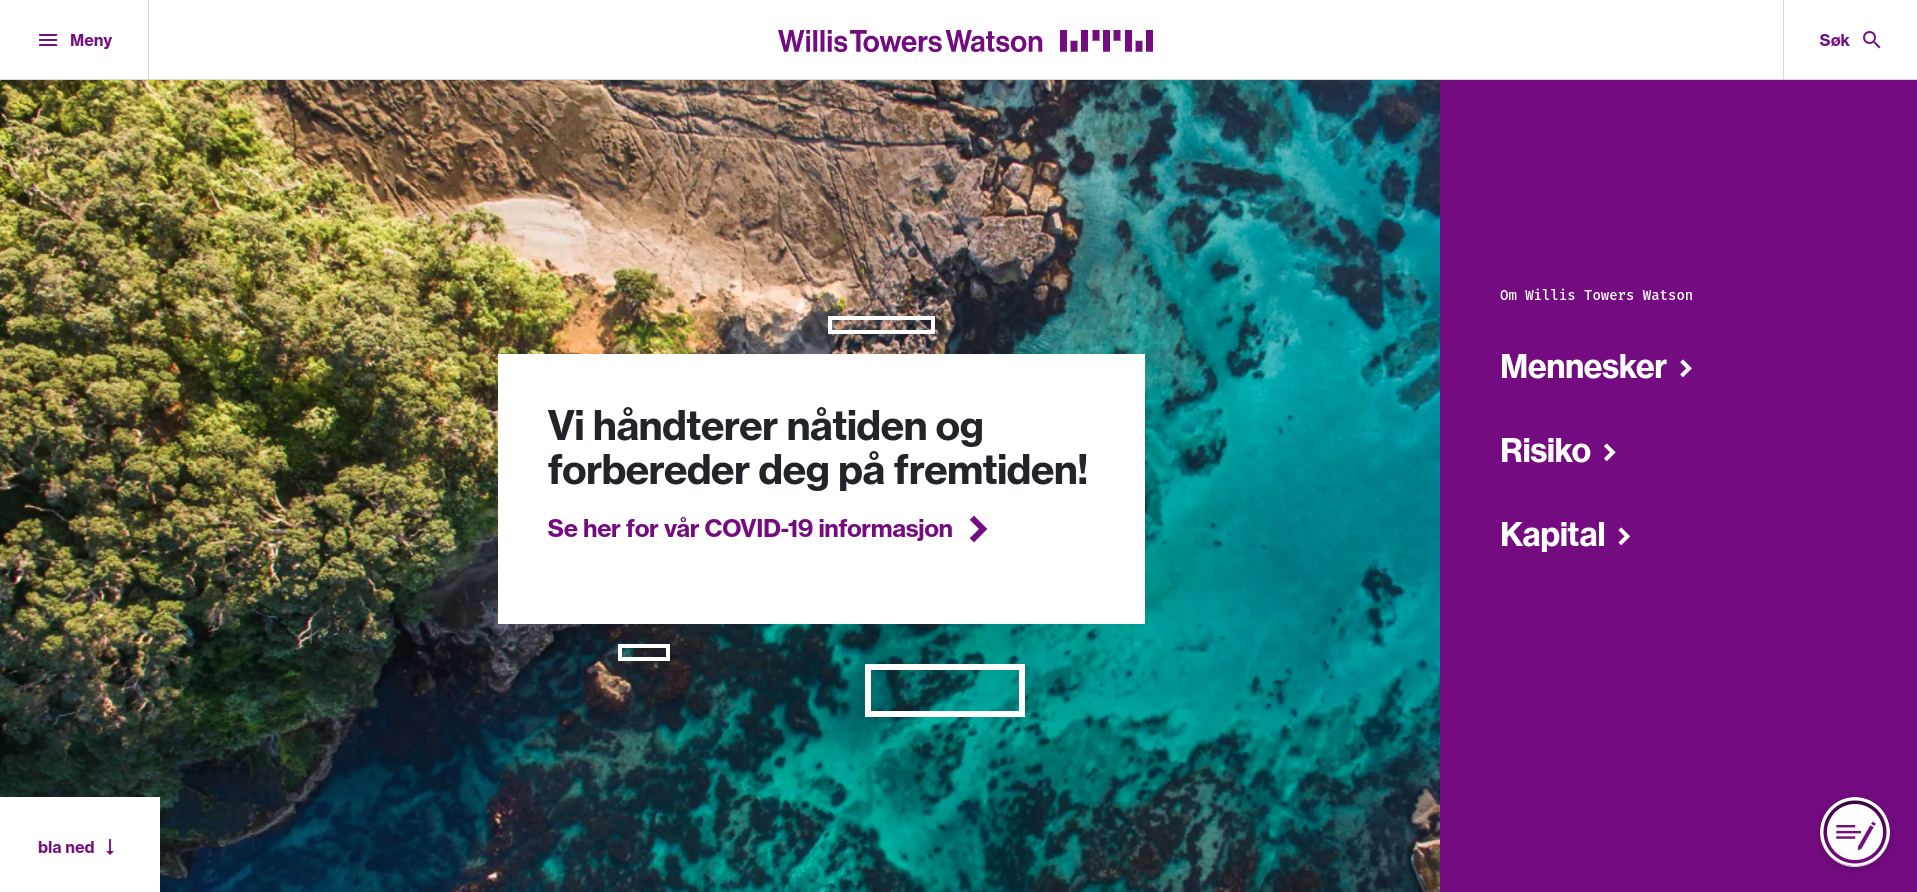 willistowerswatson.com presentation